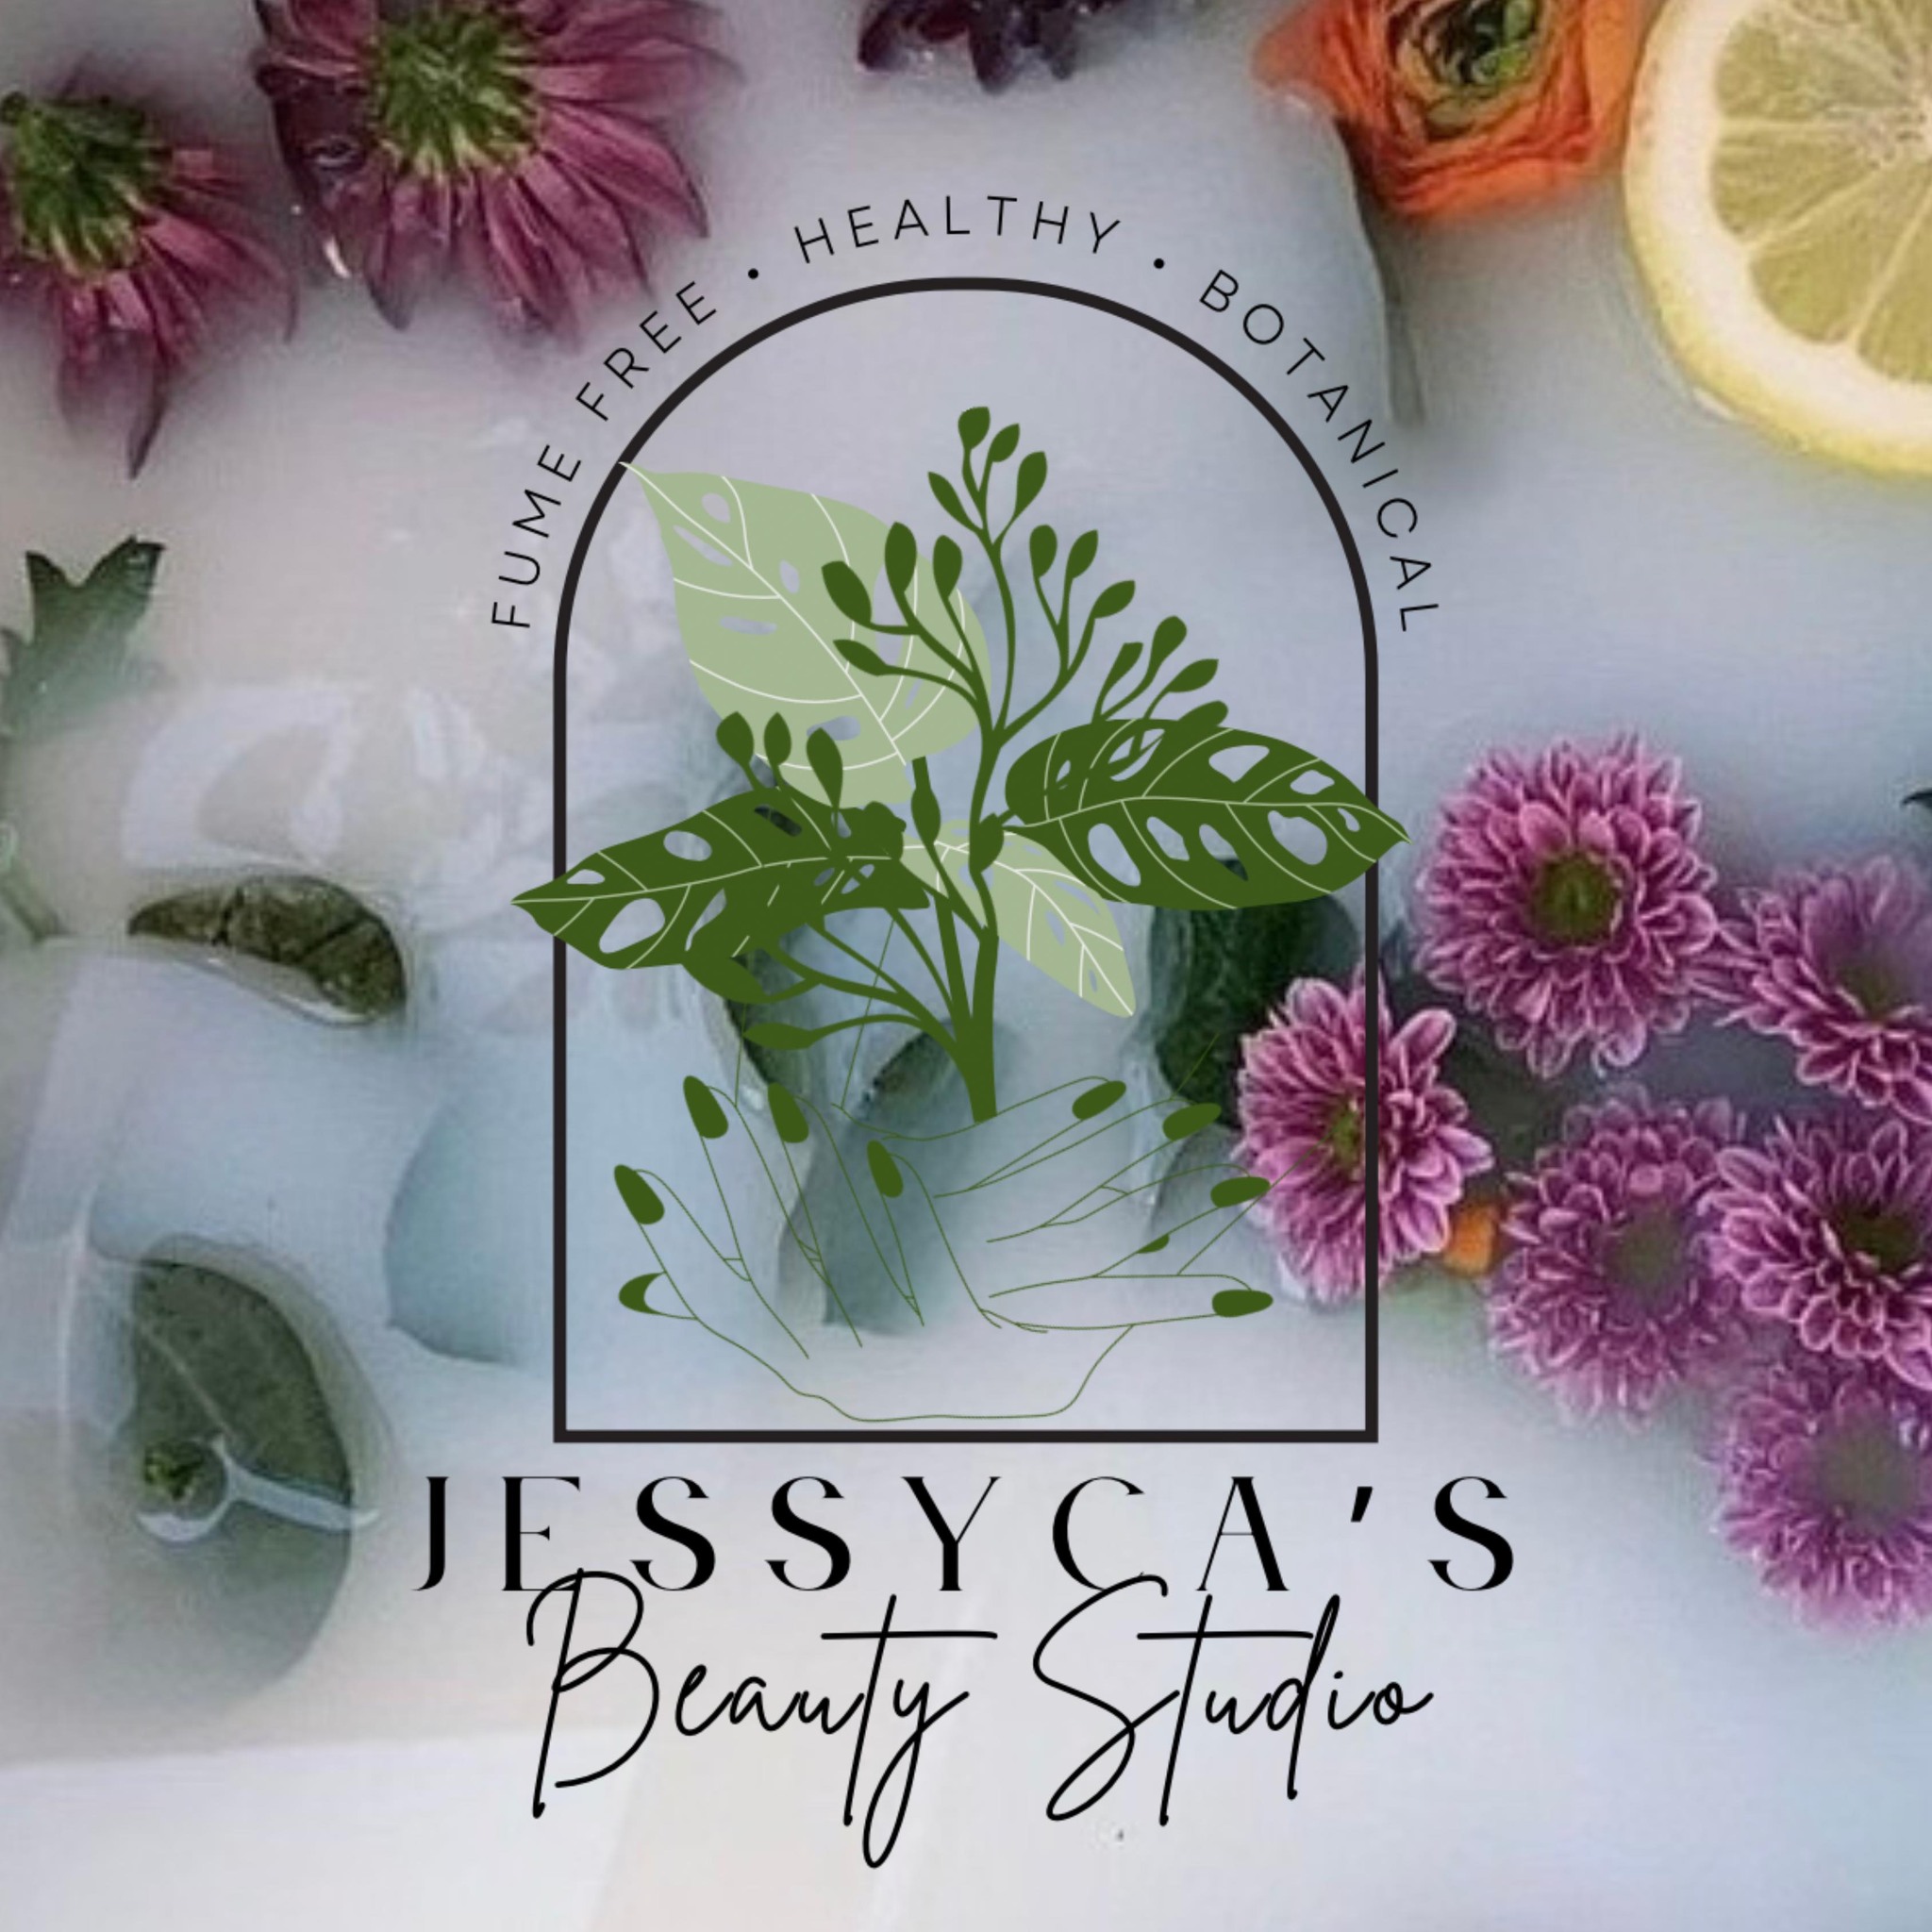 Jessyca's Beauty Studio